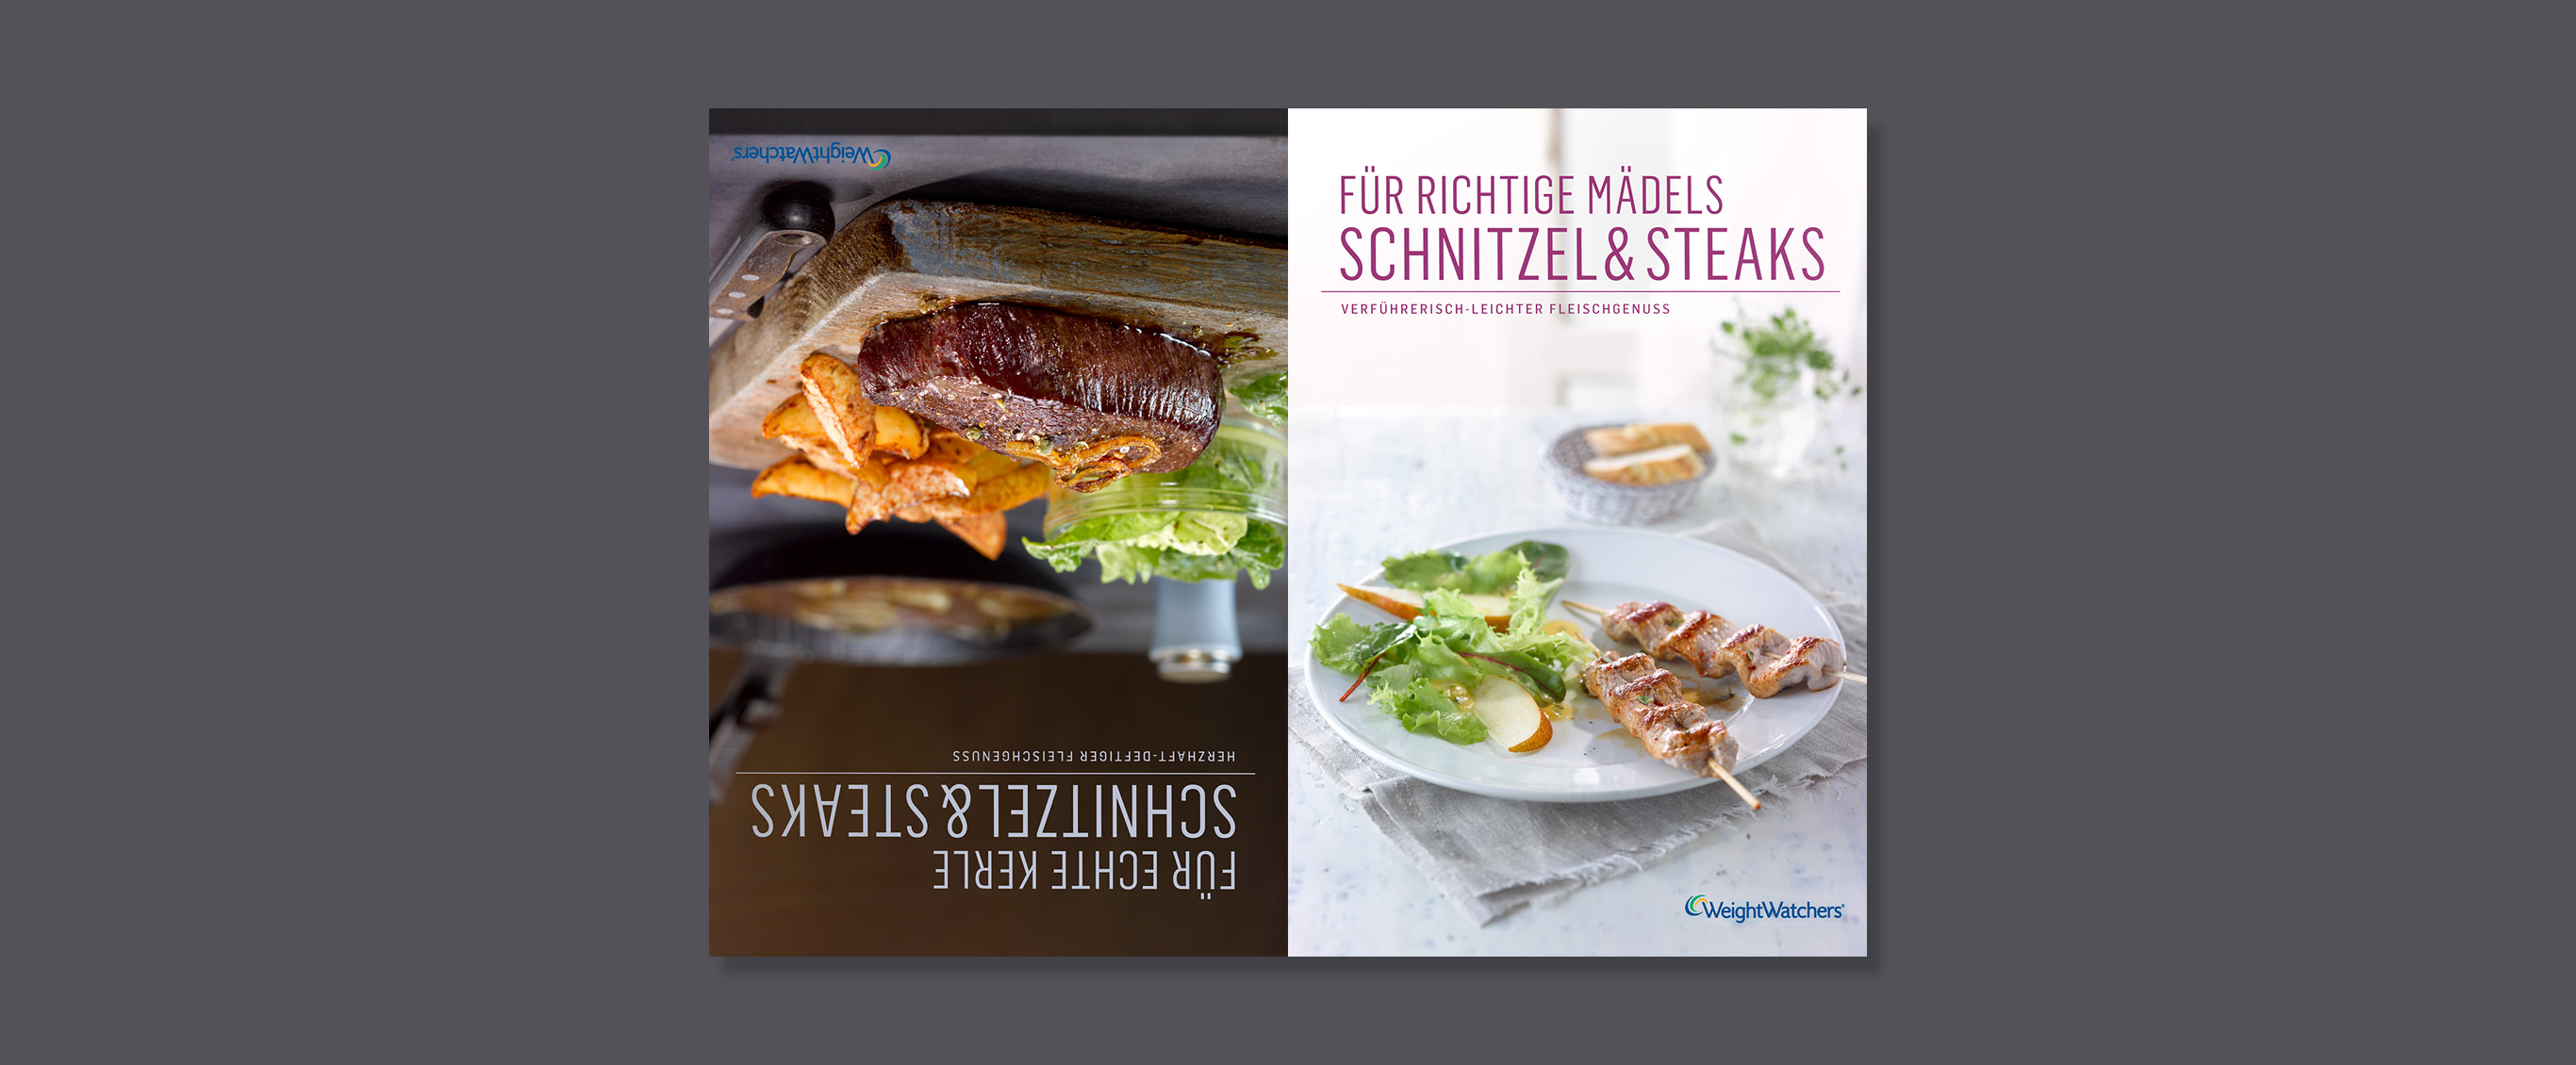 books - weight watchers - schnitzel & steaks - wendecover